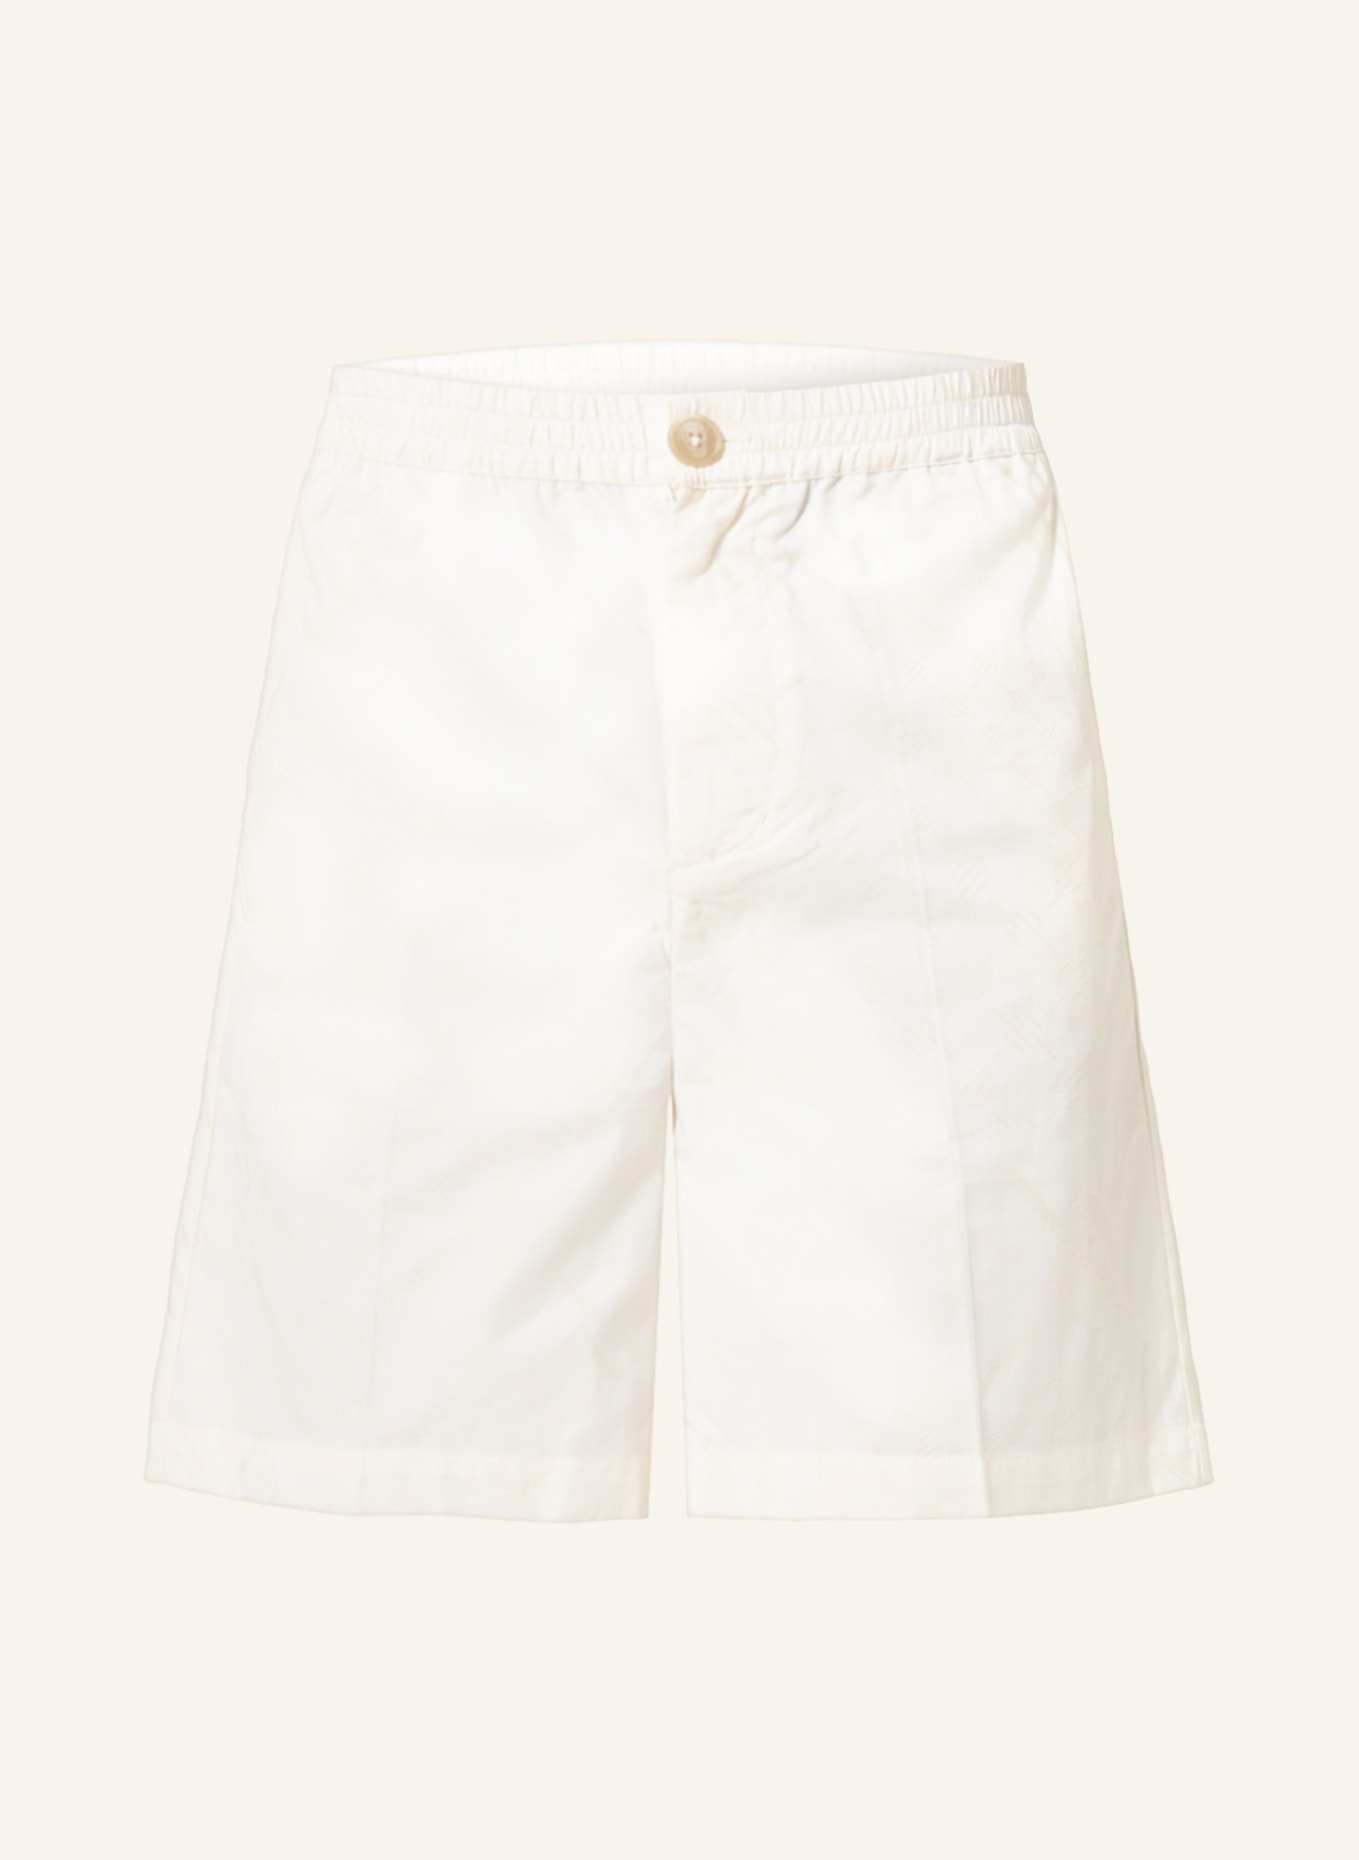 DAILY PAPER Jacquard-Shorts PIAM, Farbe: ECRU (Bild 1)